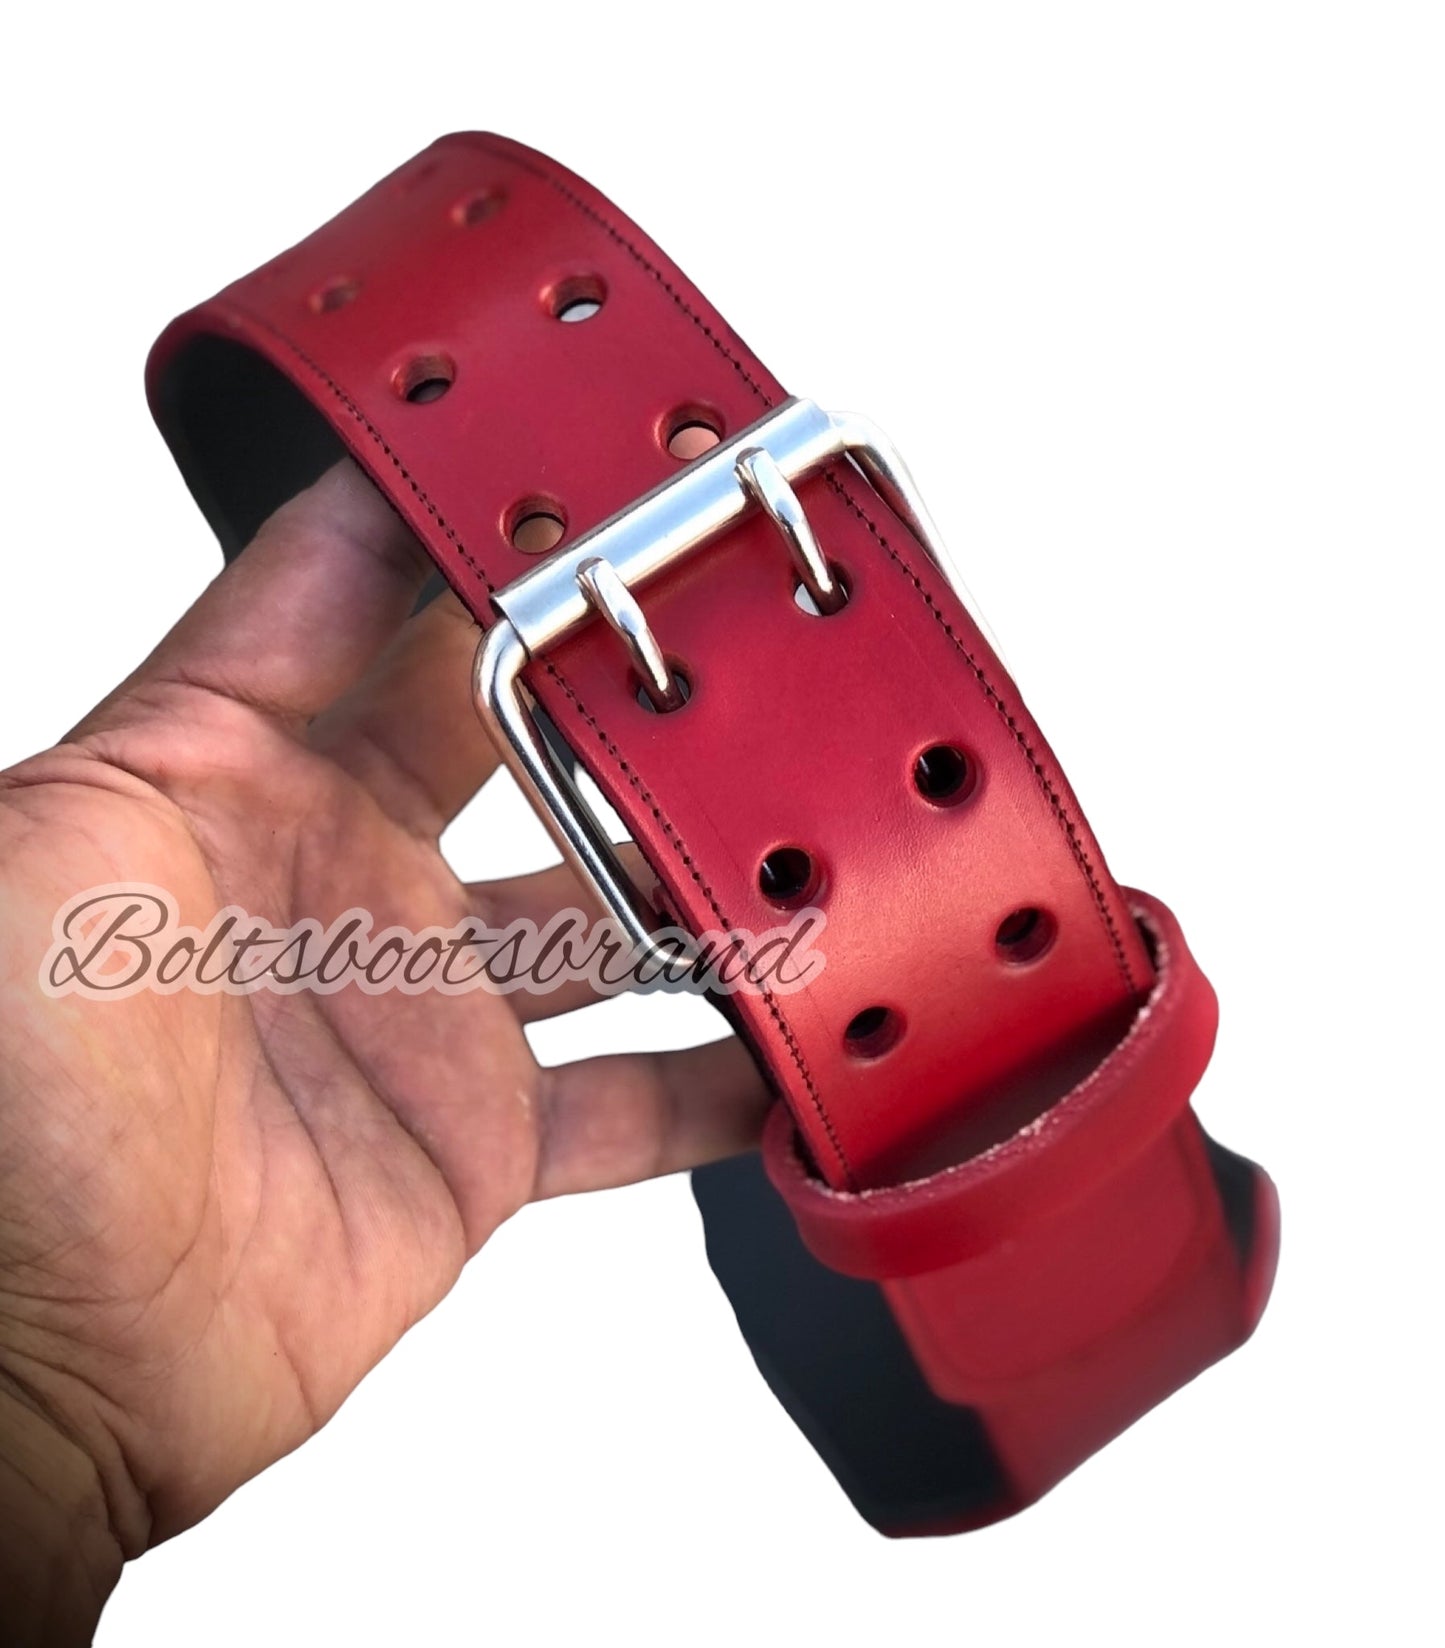 Bld97 handtooled weight belt by Boltsbootsbrand